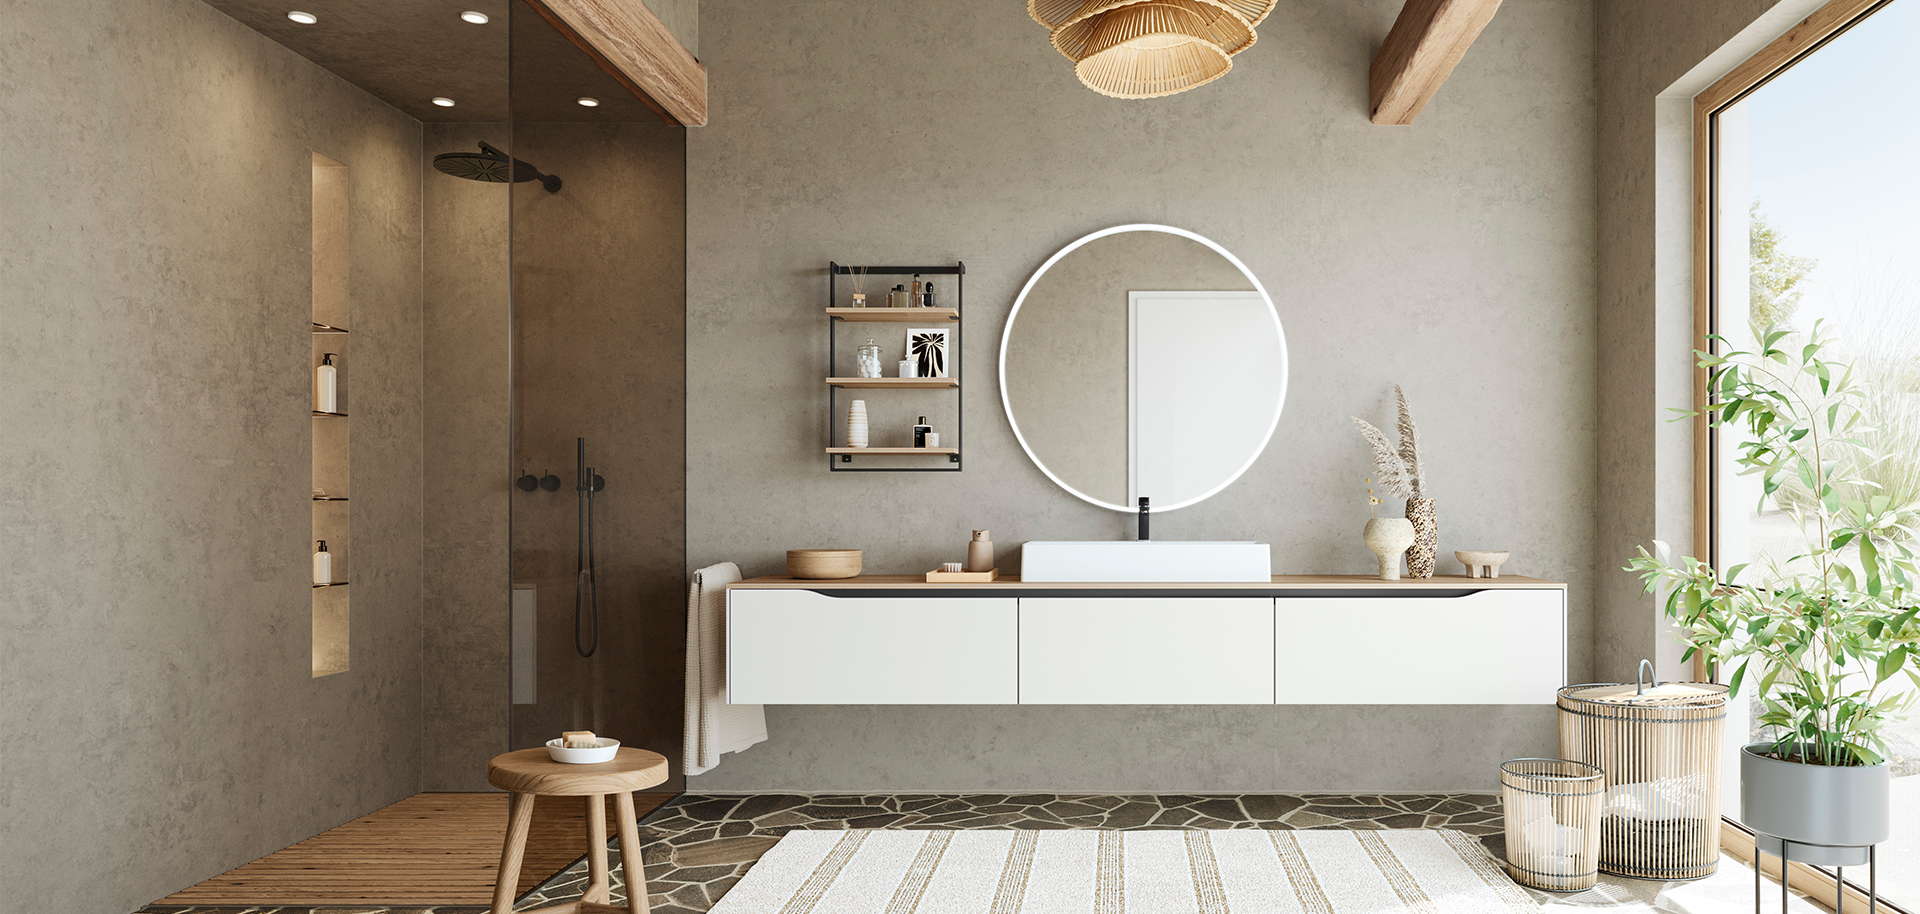 Diseño de baño minimalista con un tocador flotante, espejo redondo y acentos naturales para un espacio sereno y elegante.